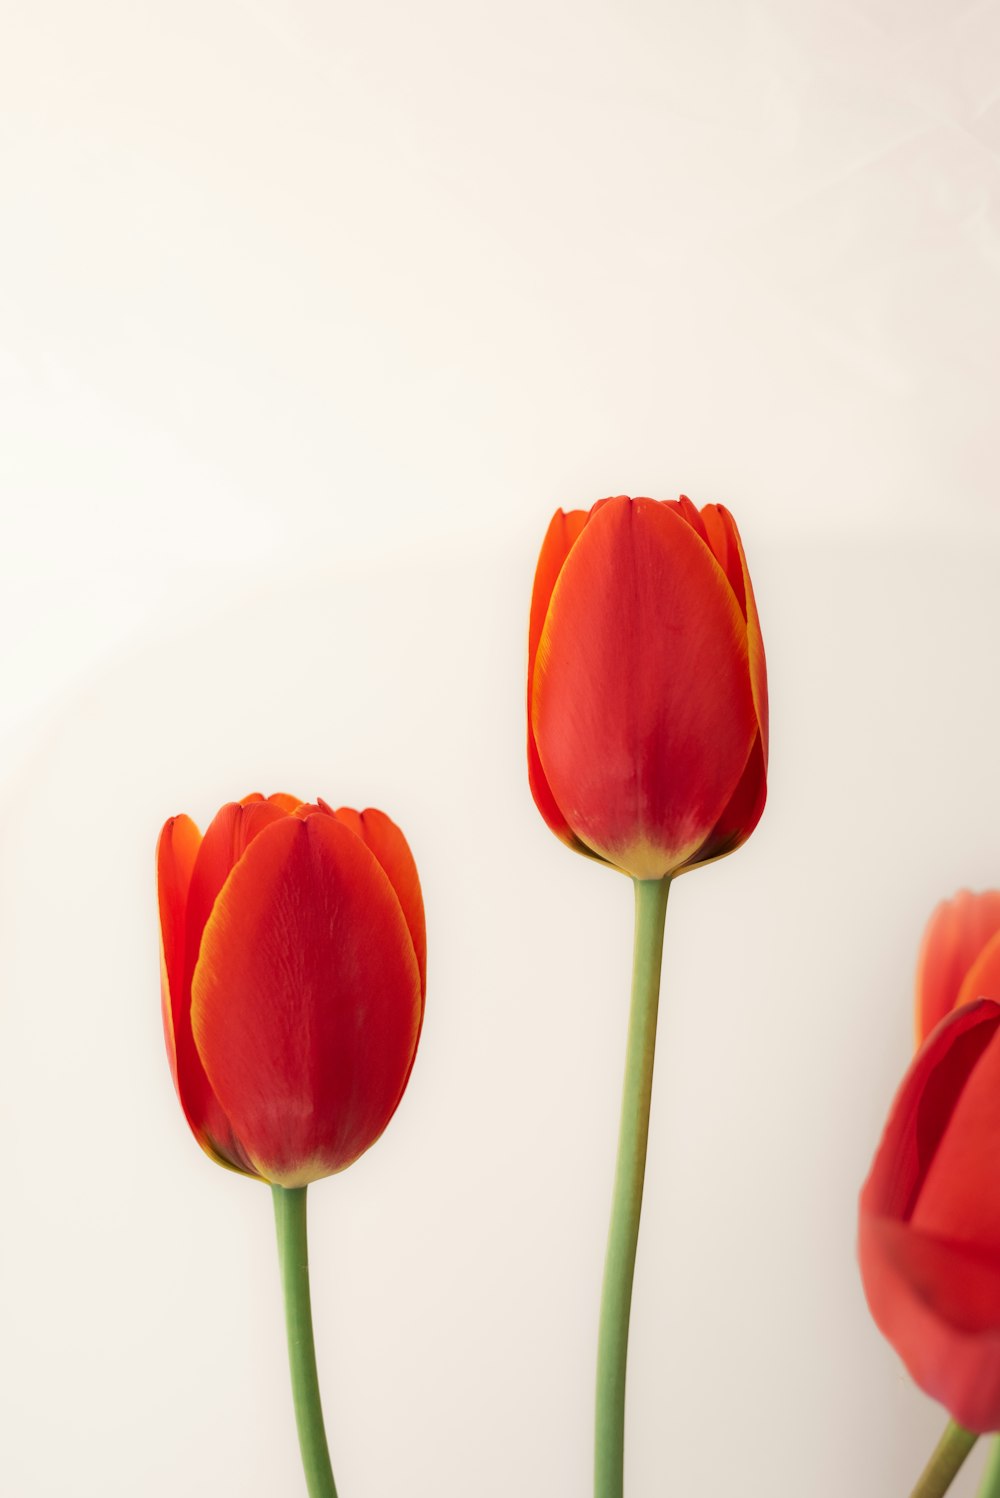 テーブルの上の花瓶に3つの赤い花